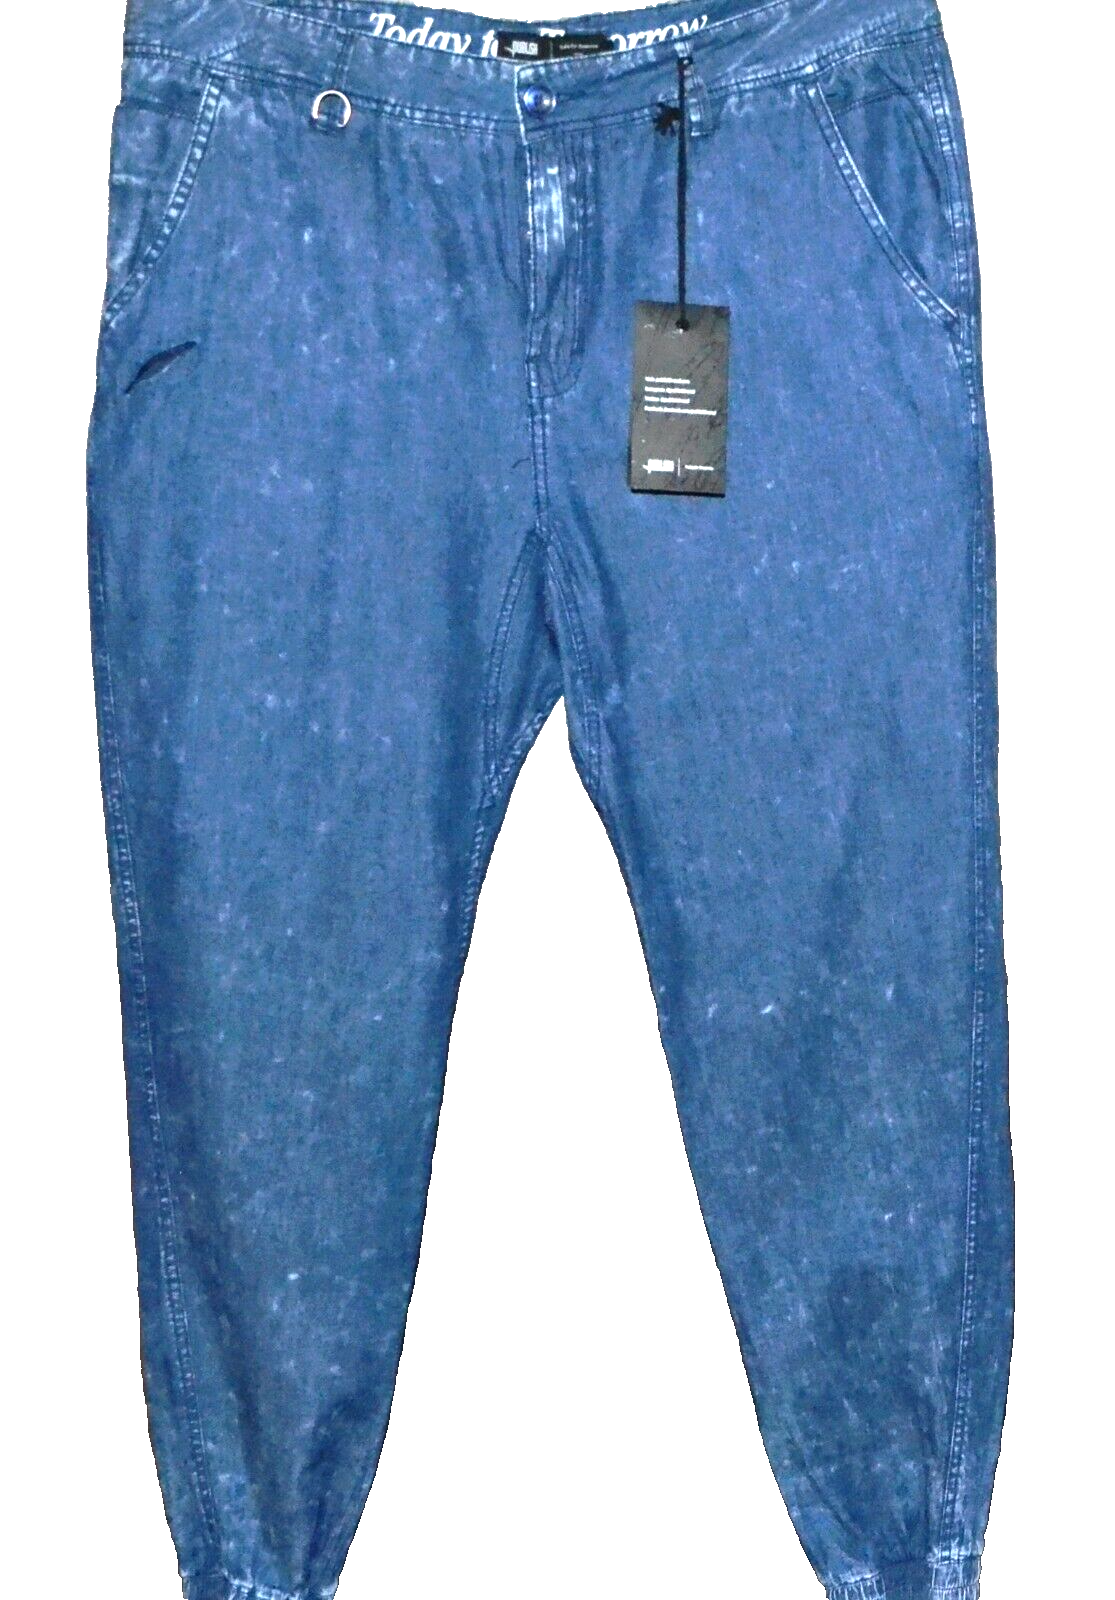 Primary image for Publish Design Men's Blue Thin Denim Pants Jogger Sweatpants Size US 38